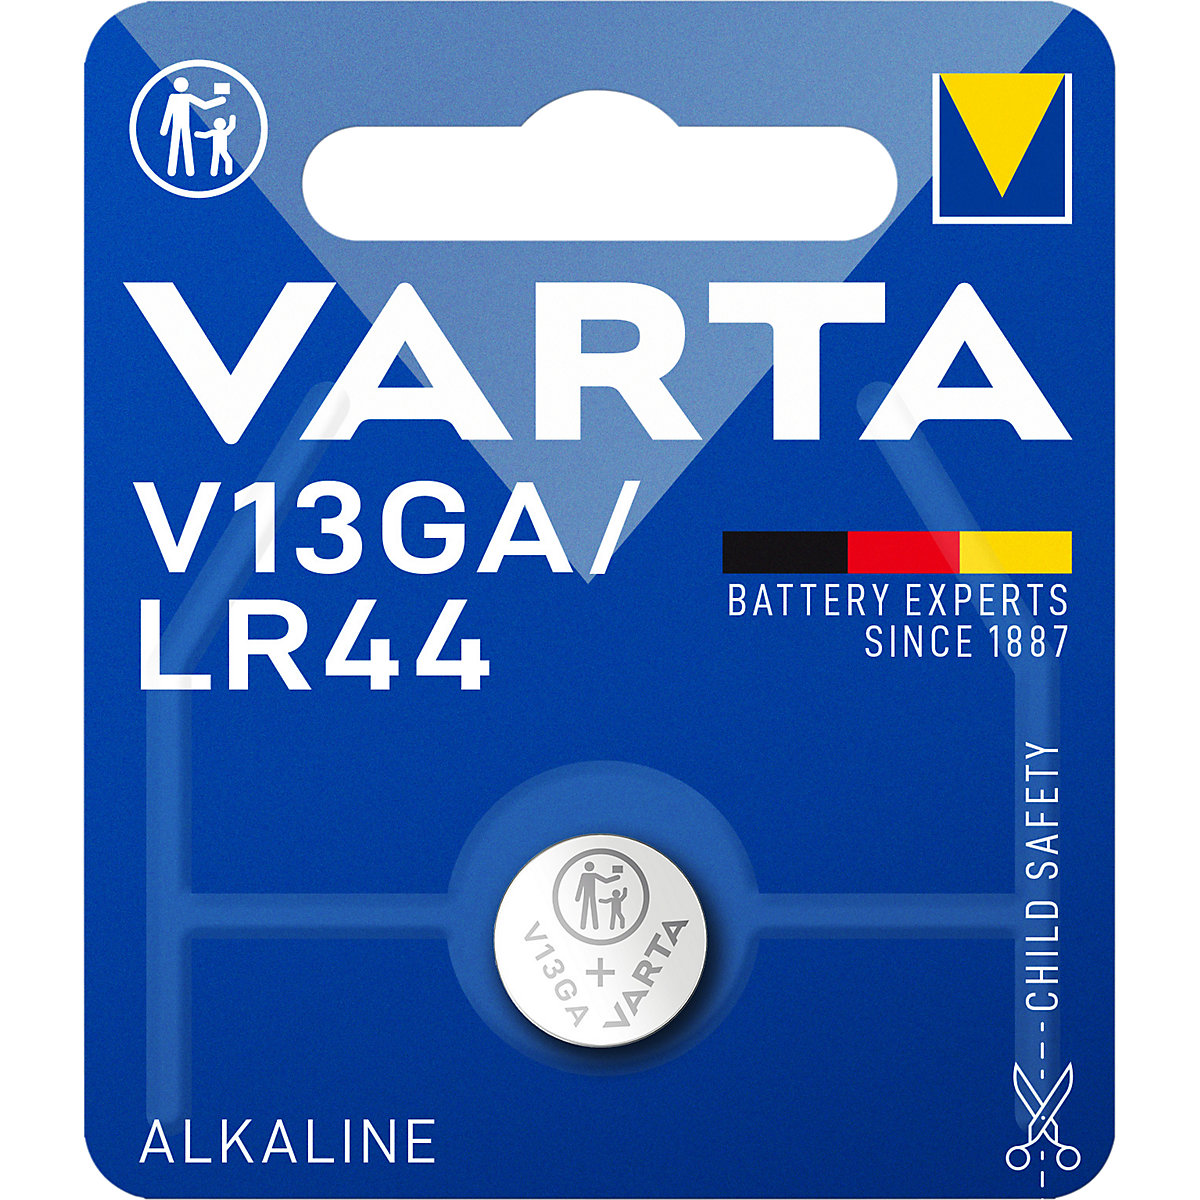 ALKALINE special battery – VARTA